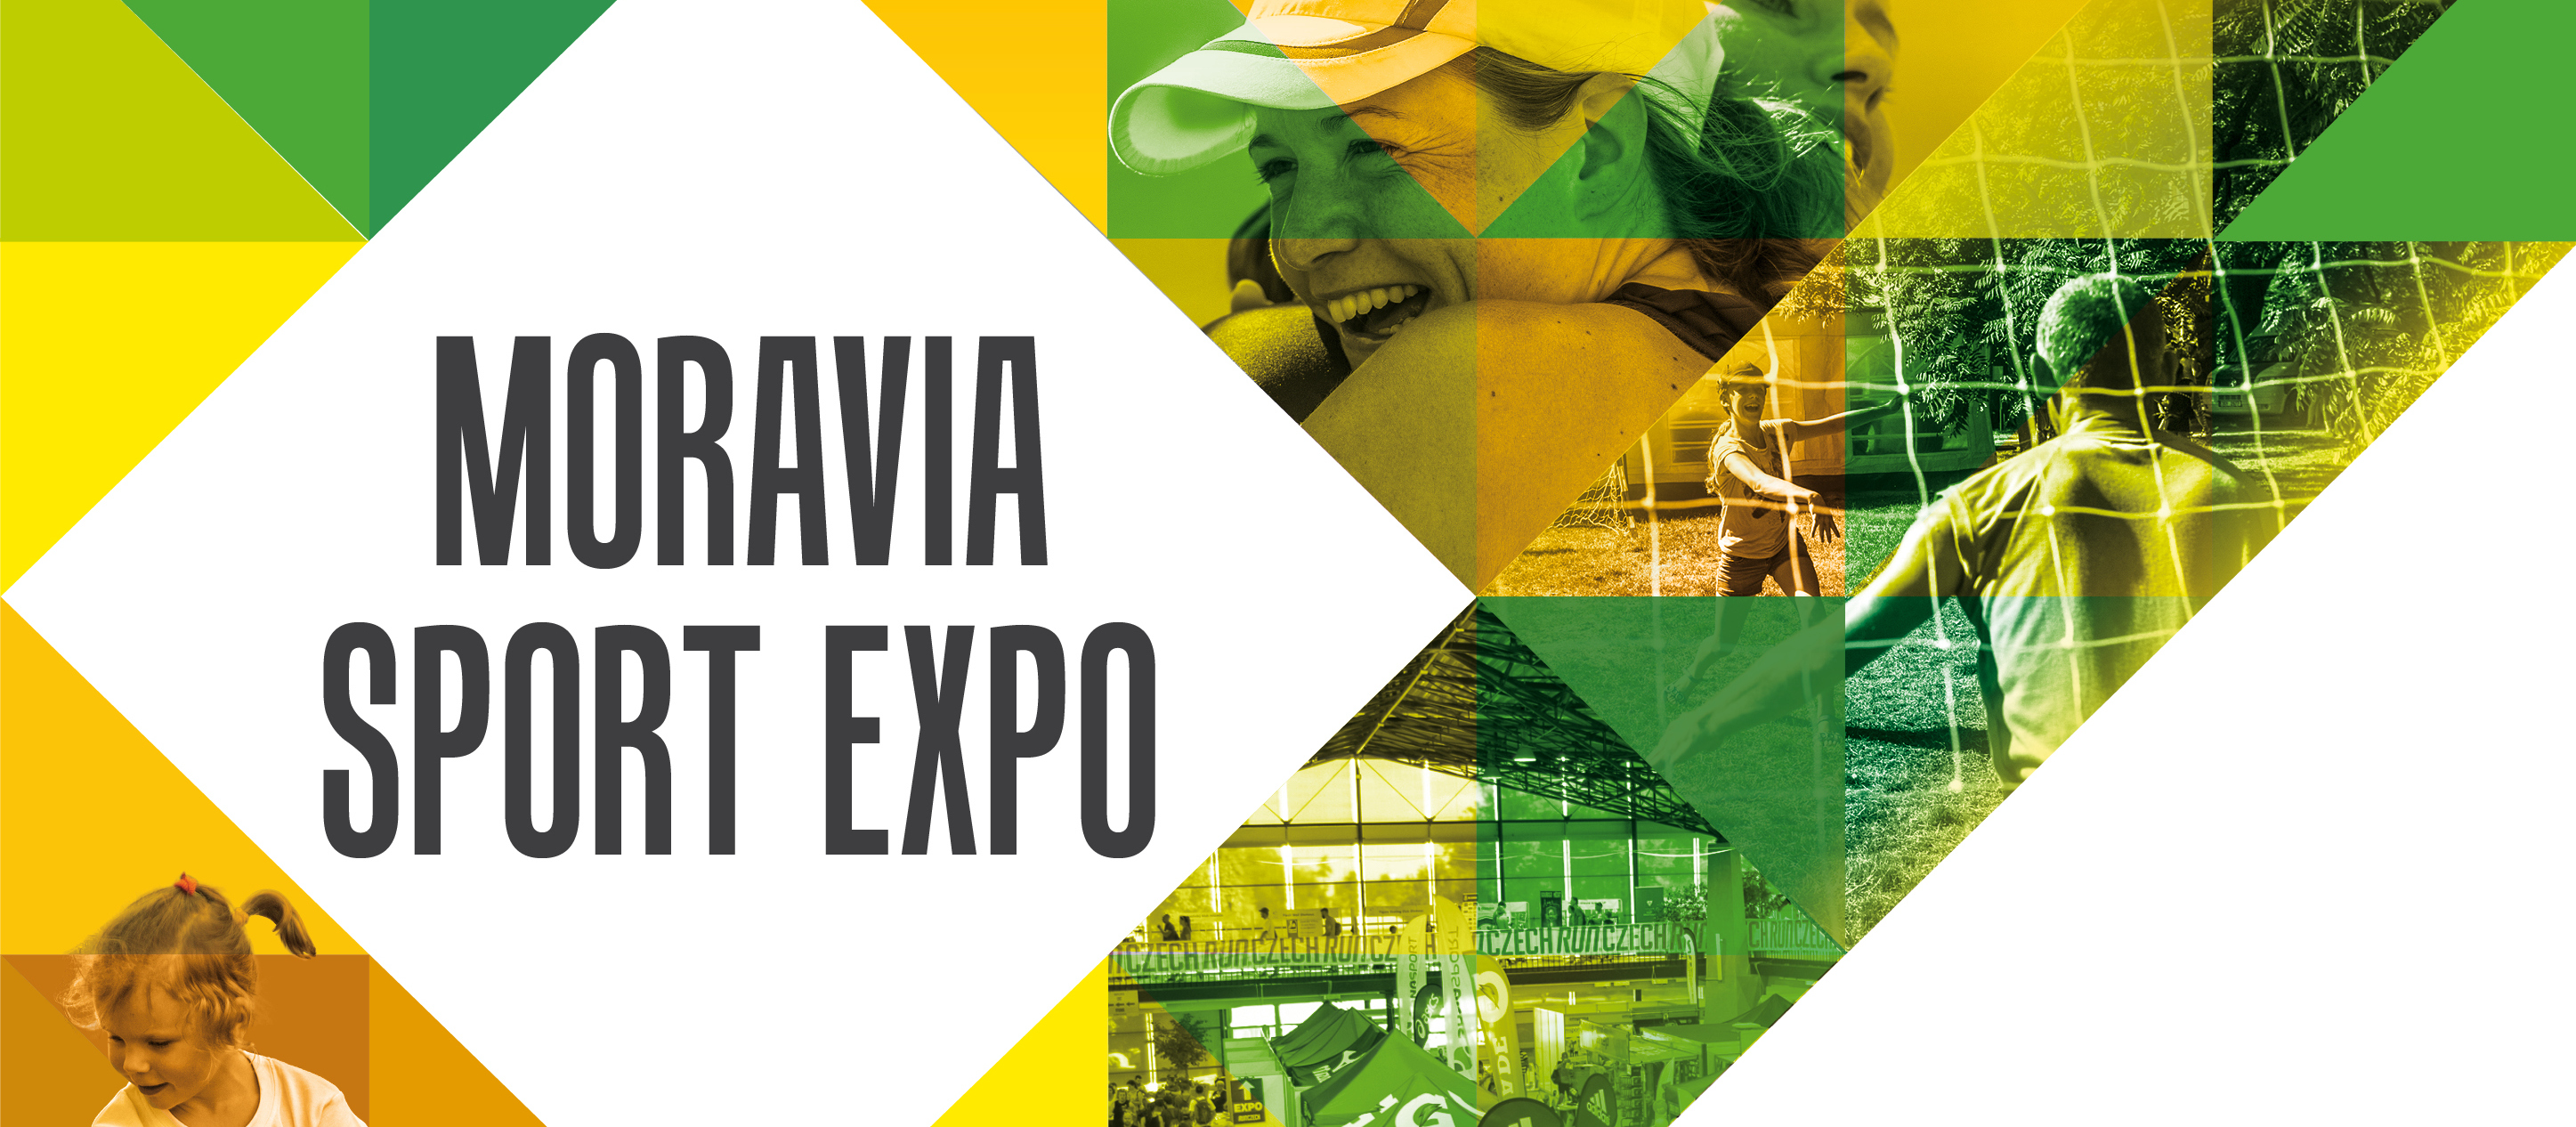 Moravia Sport Expo začíná již 22. června v Olomouci!